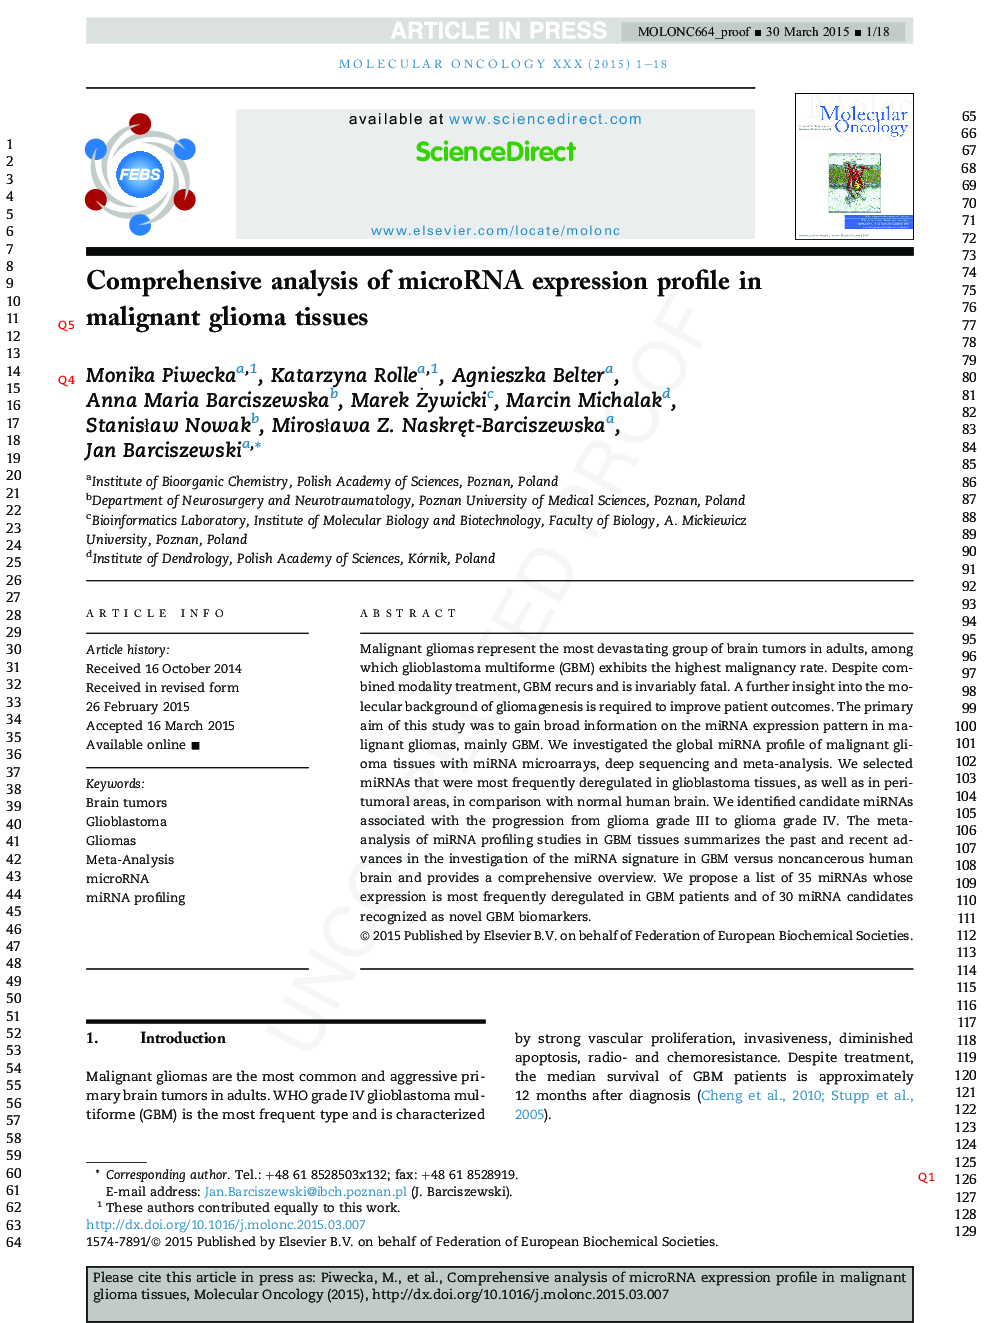 Comprehensive analysis of microRNA expression profile in malignant glioma tissues